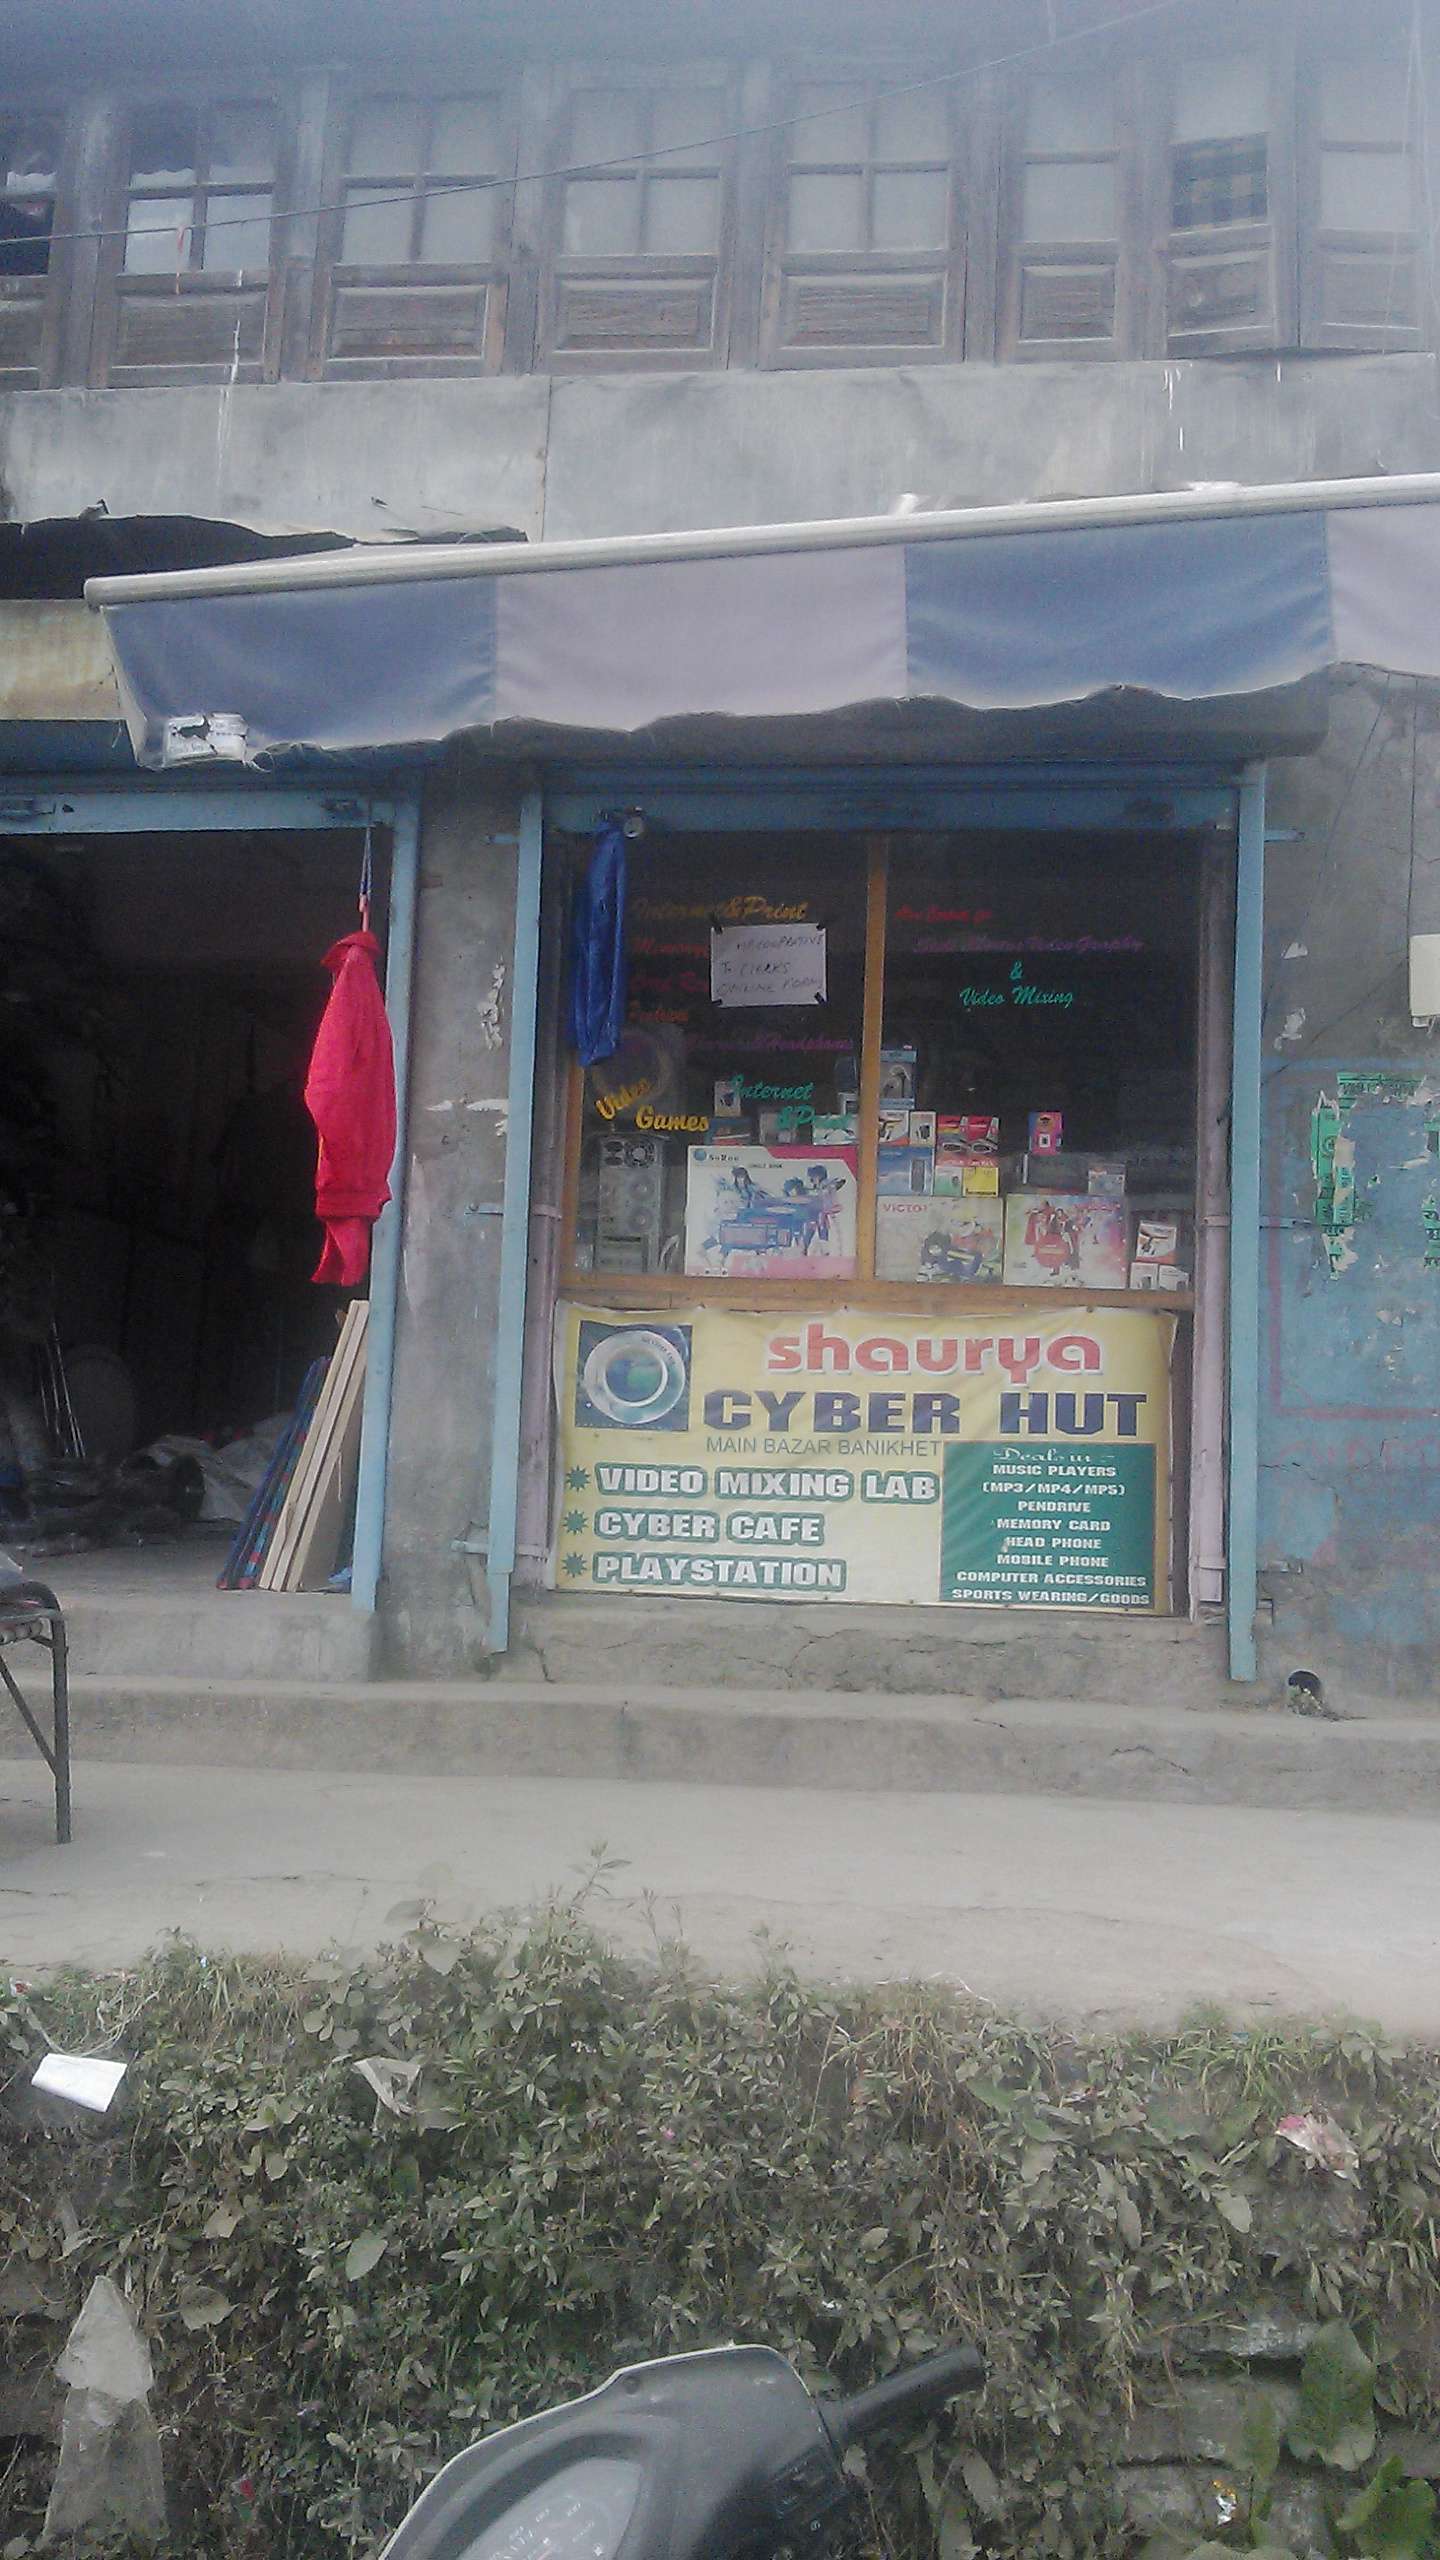 Shaurya Cyber Hut